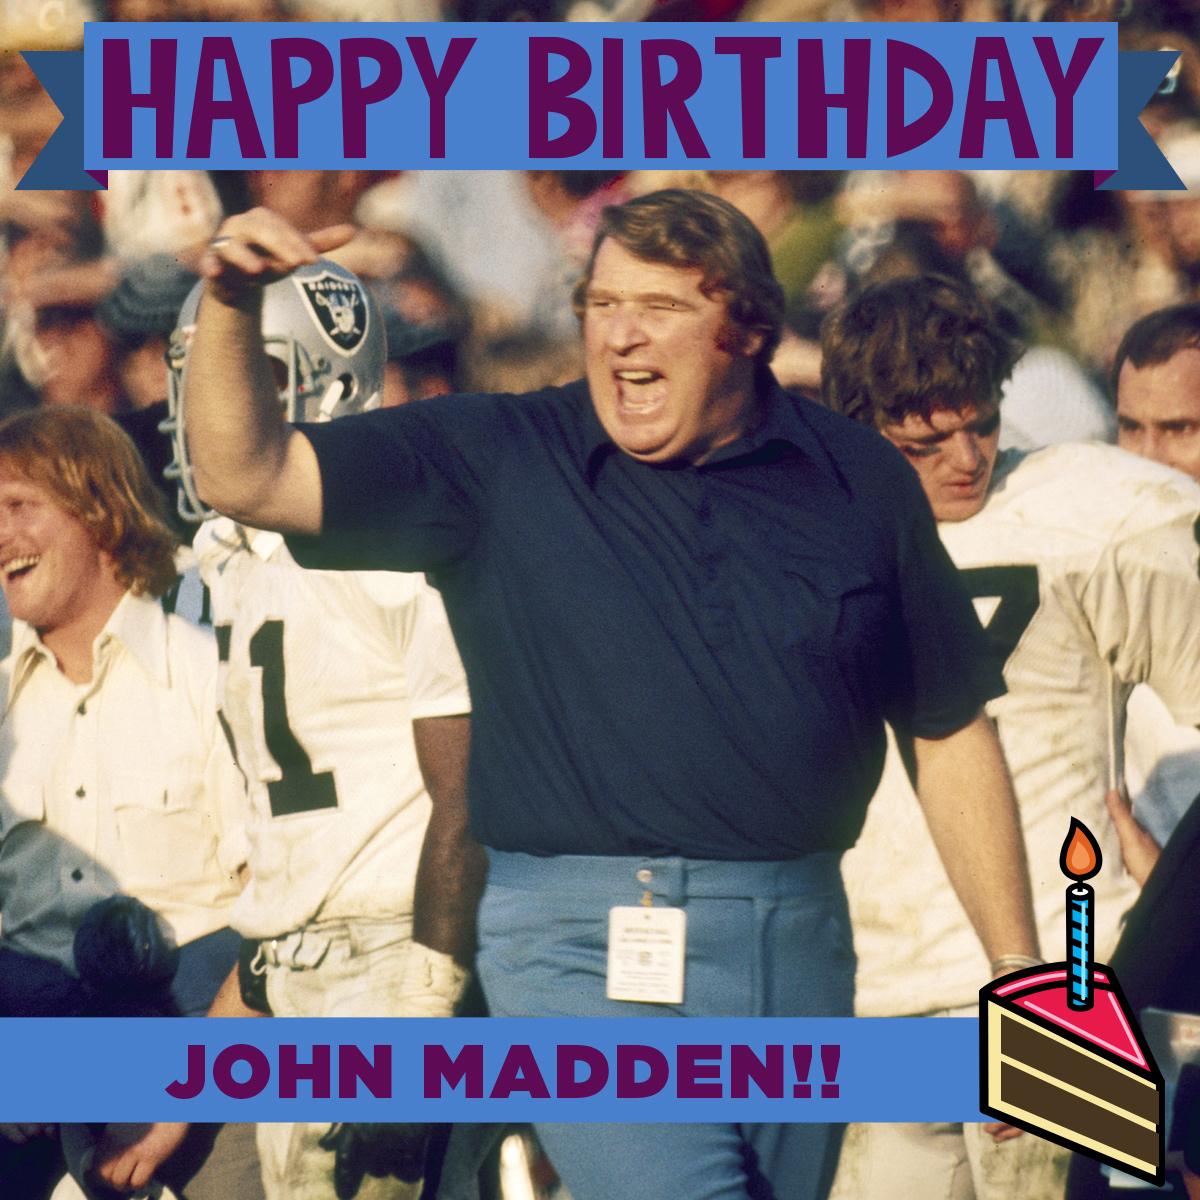 To wish the legendary John Madden a Happy Birthday! 